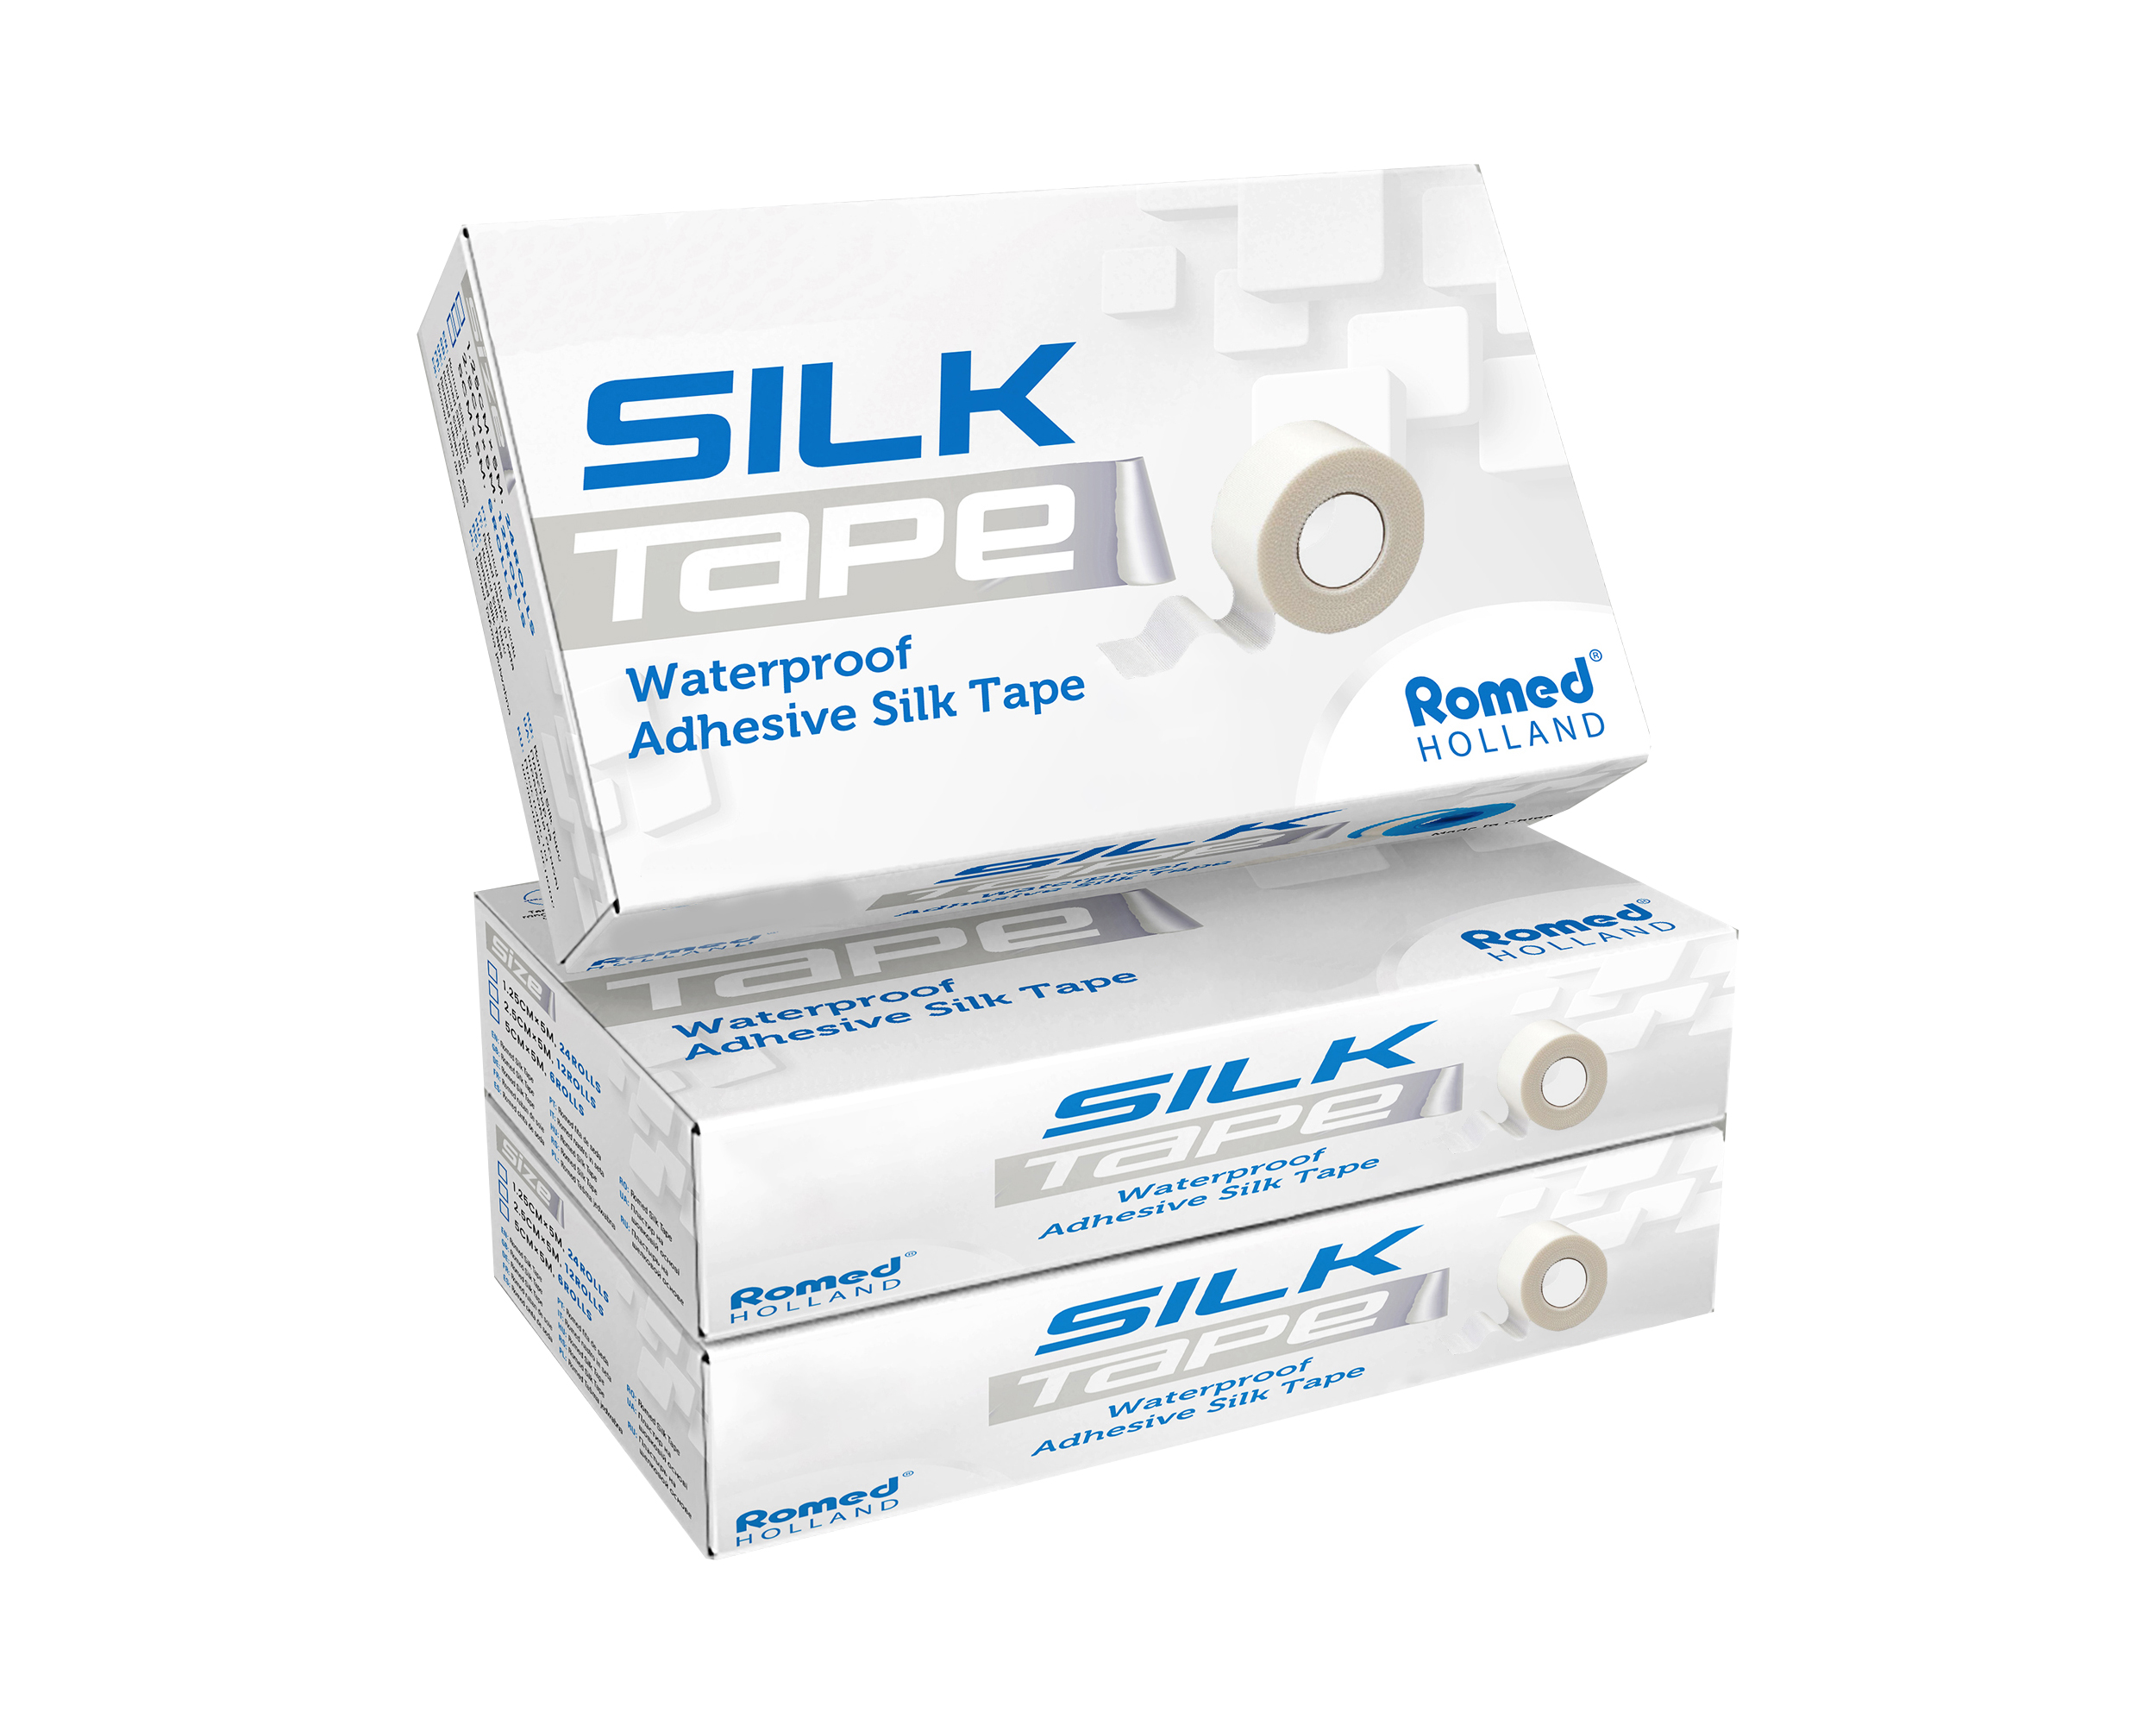 ST-1.25 Romed Adhesive Silk Tape, 1.25cm x 5m, doux, facile à déchirer, imperméable, 24 rouleaux dans une boîte intérieure, 720 rouleaux par carton.